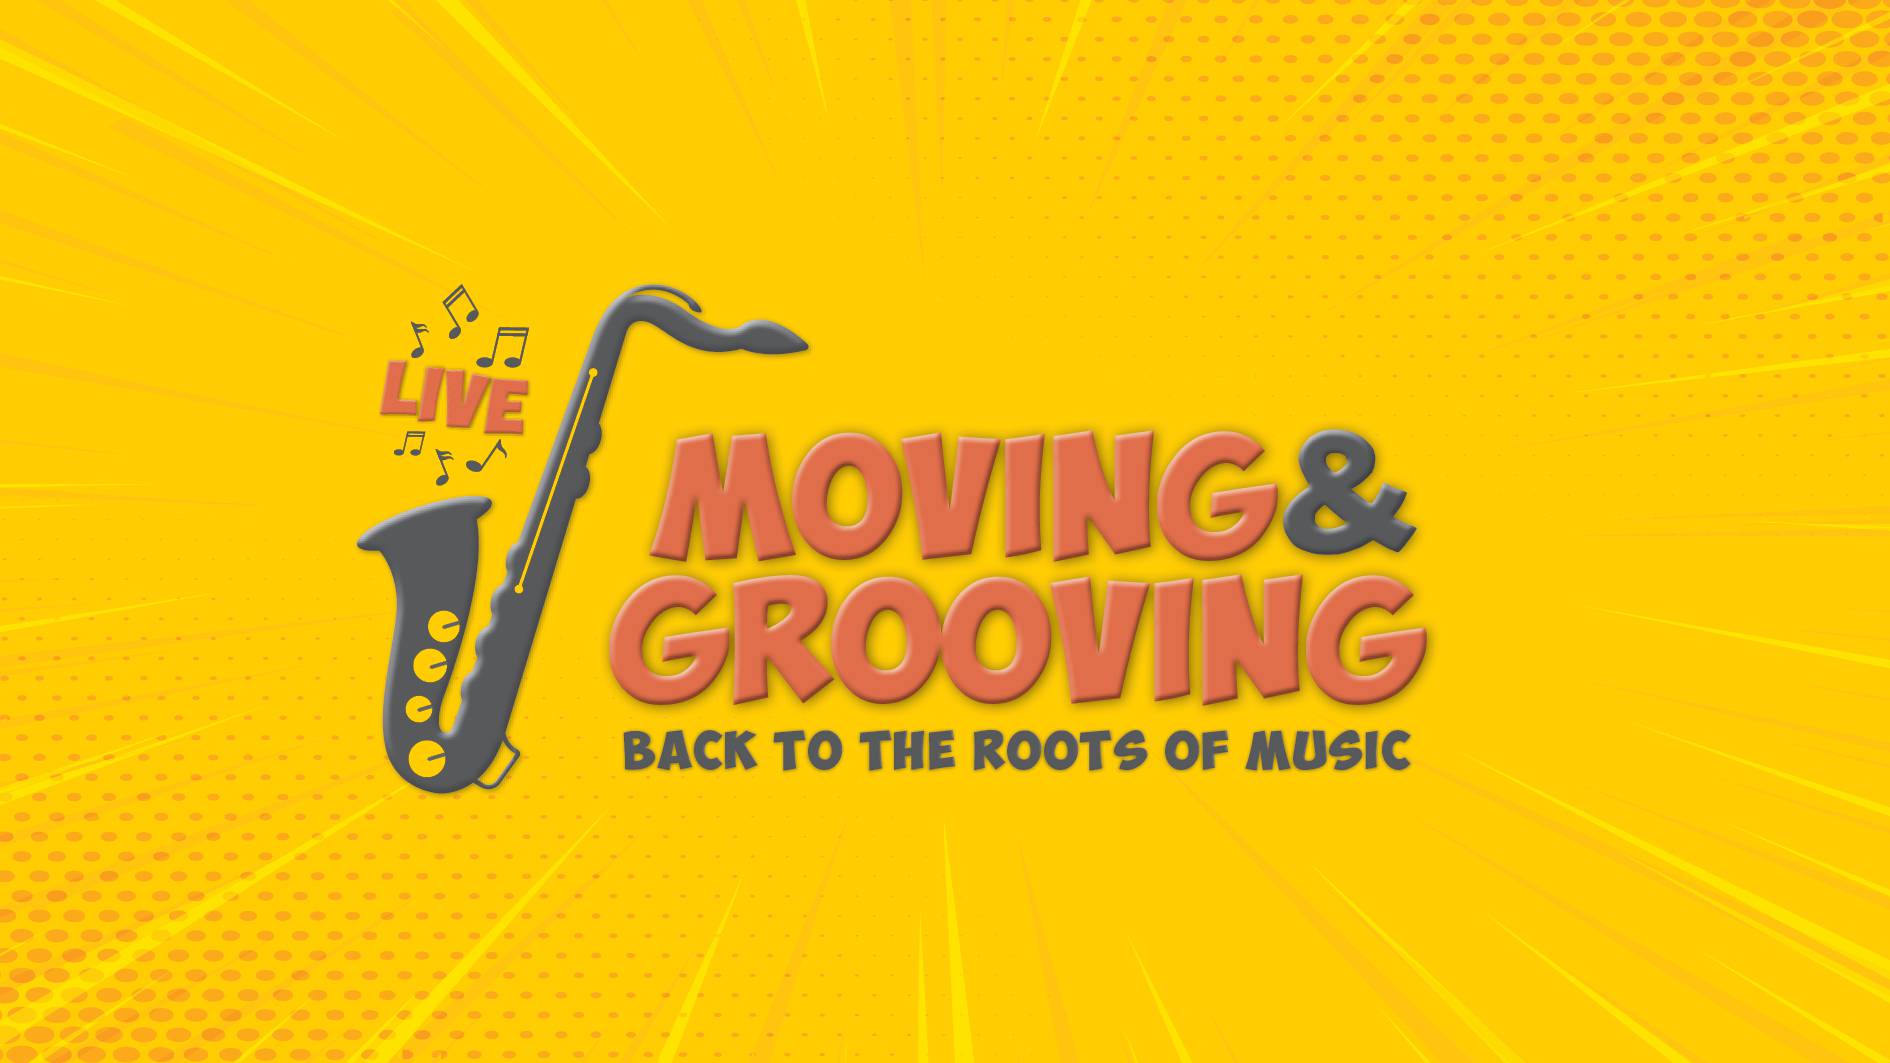 Moving & Grooving - glazbeni program koji će vas rasplesati